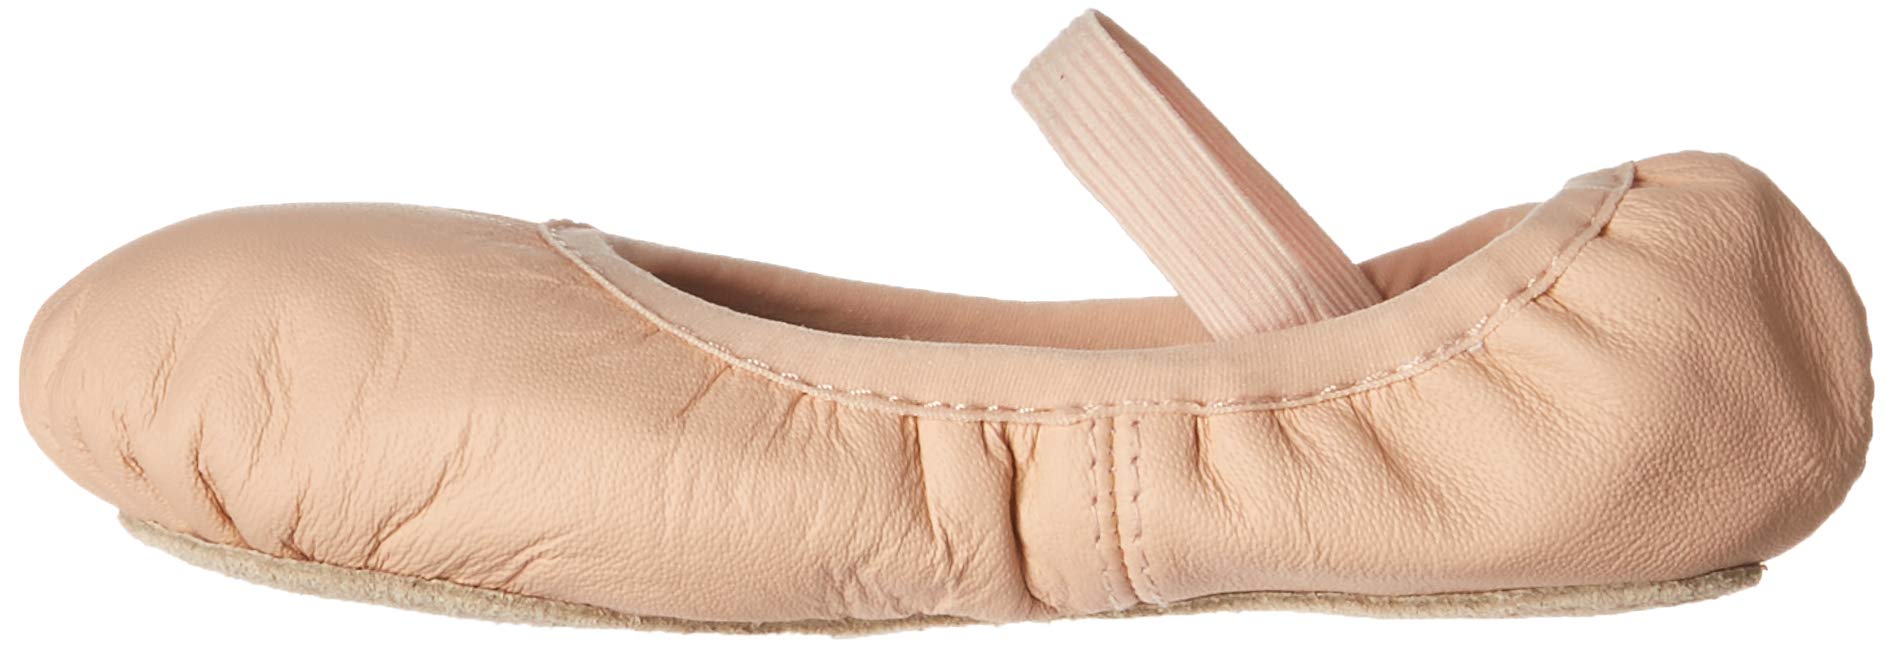 Bloch girls Bloch Girls' Belle Full-sole Leather Ballet Shoe/Slipper Dance Shoe, Pink, 1.5 Little Kid US